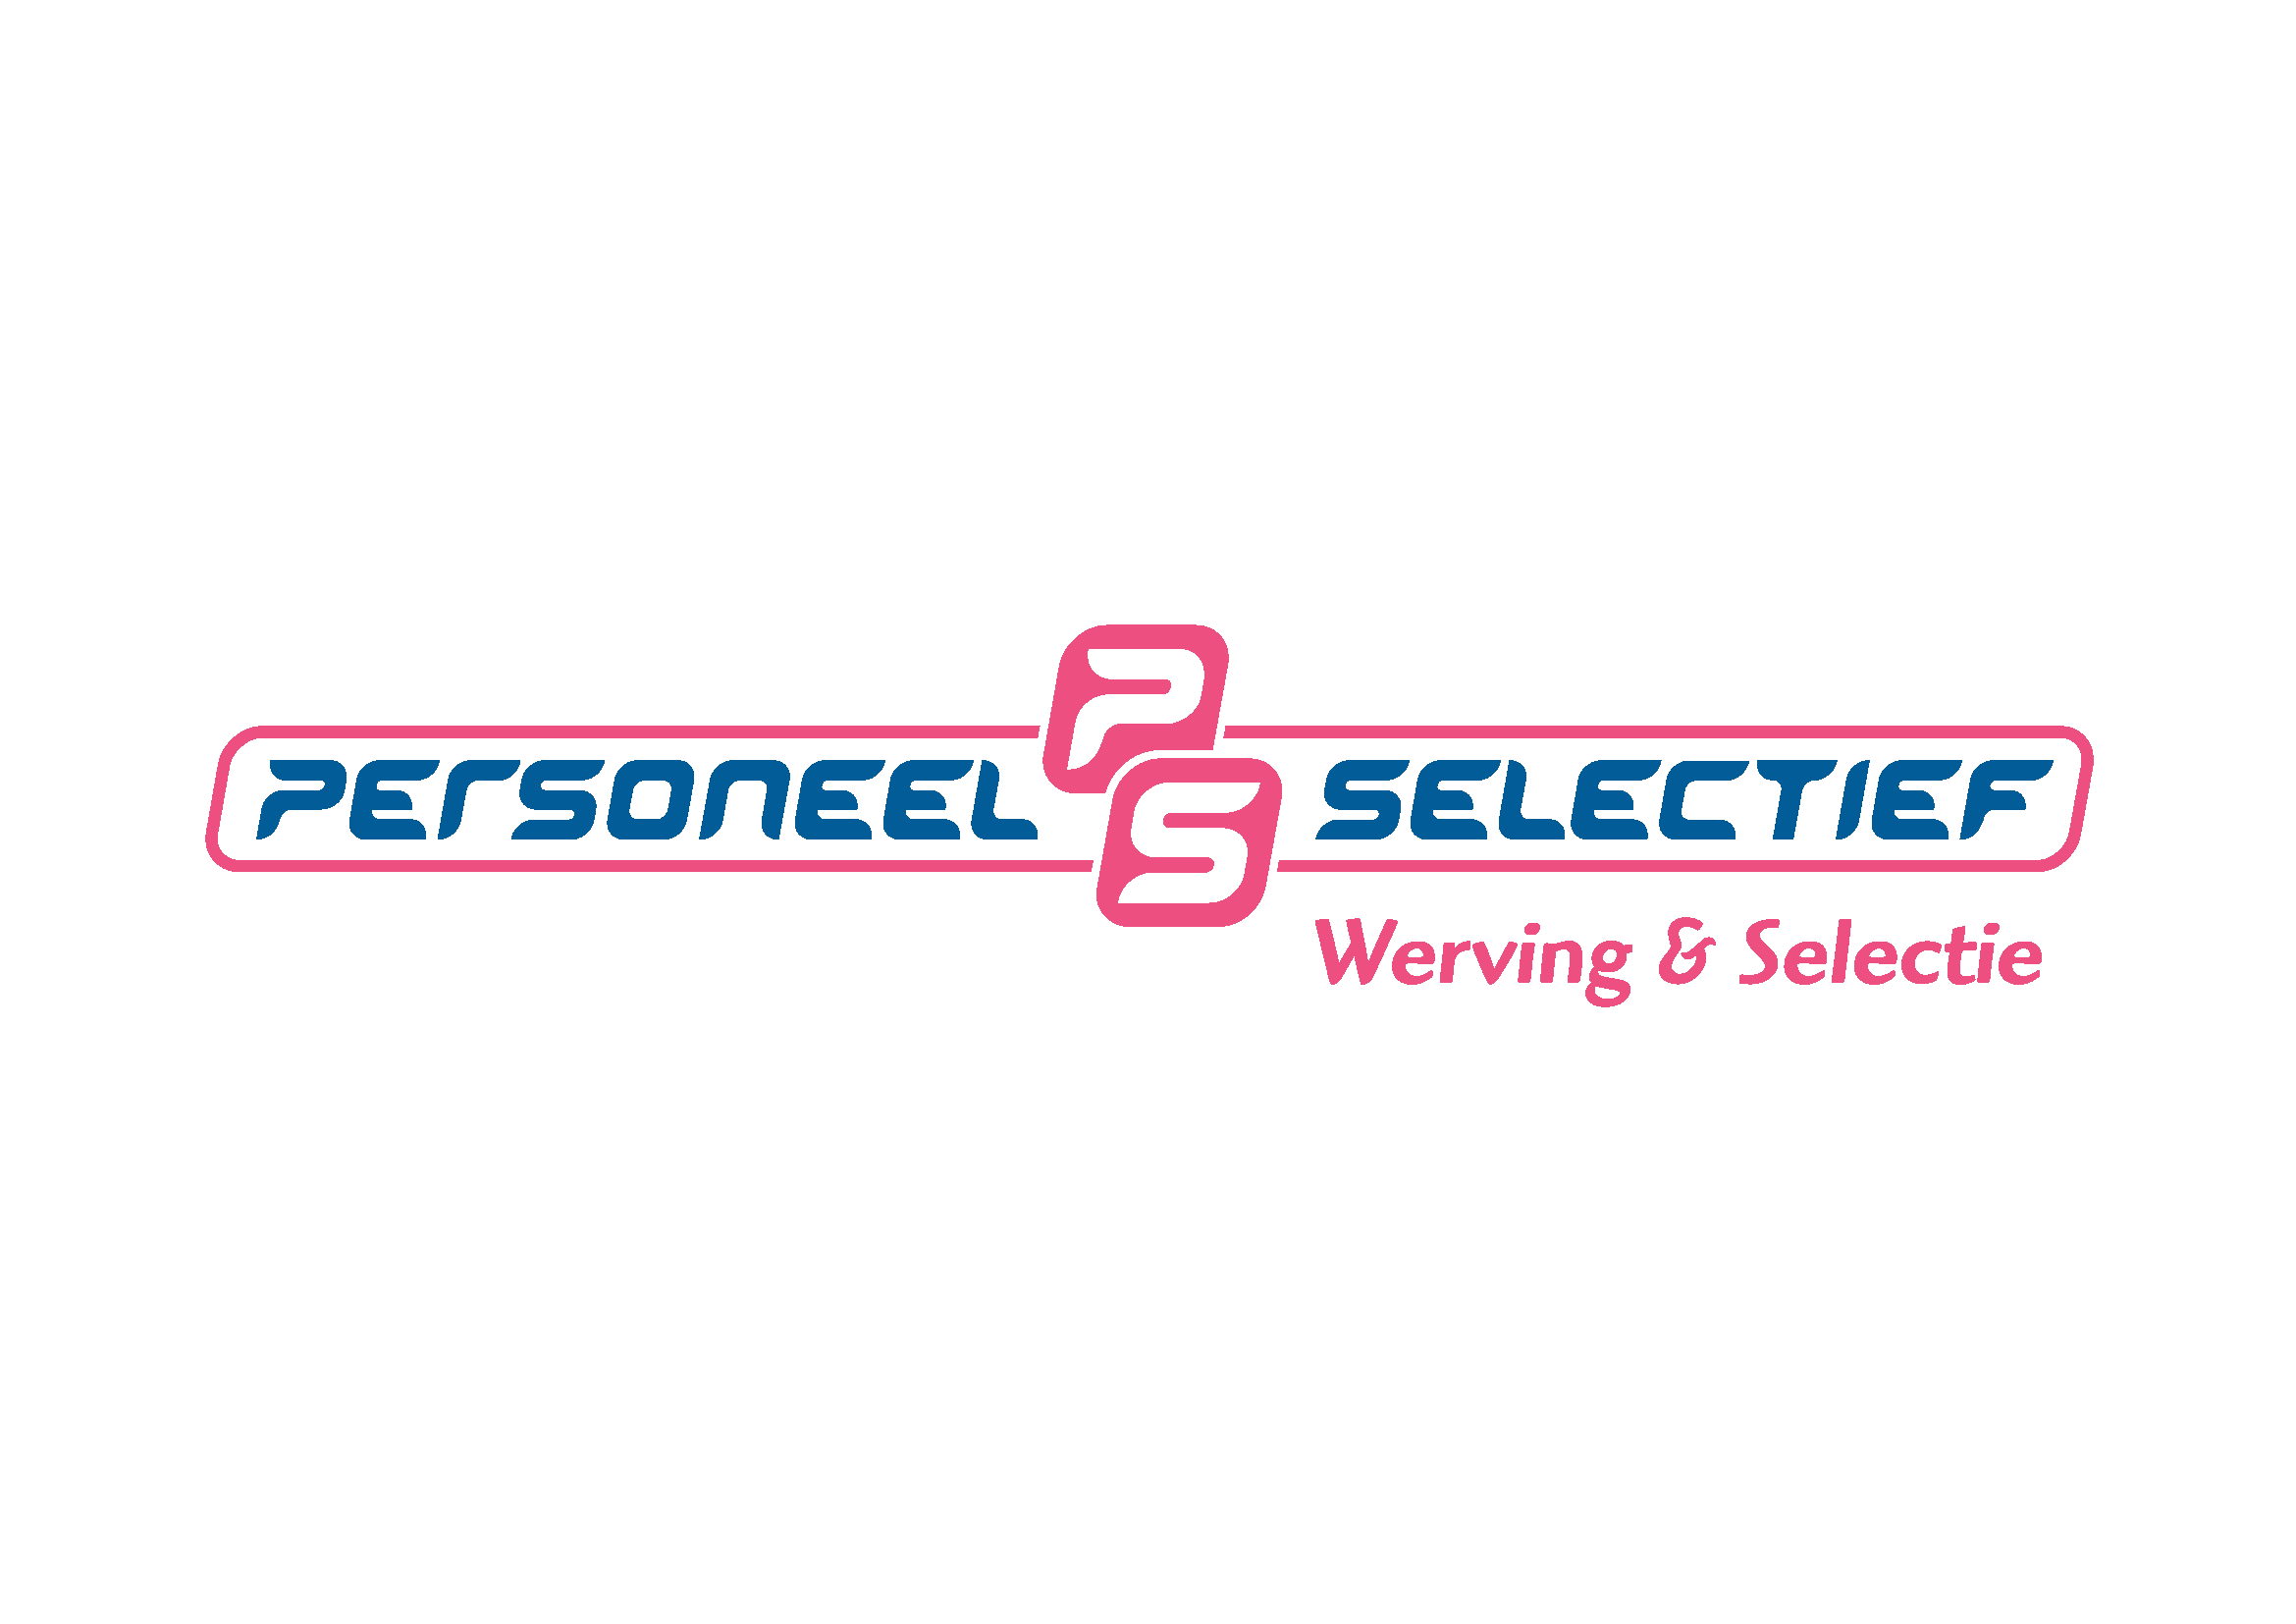 05 PersoneelSelectief - logo